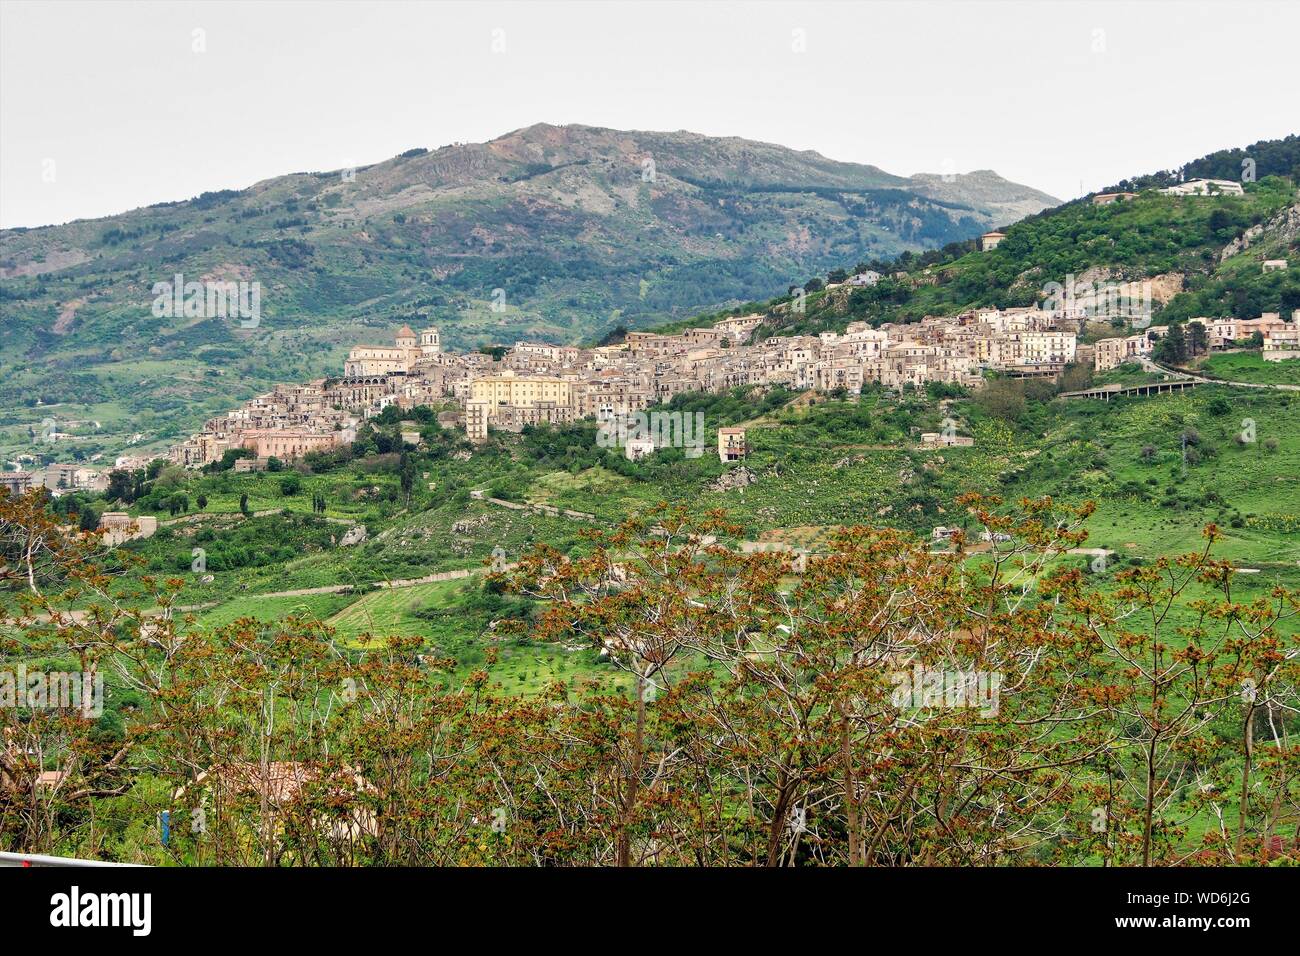 El pueblo de la colina de Petralia Sottana contra el telón de fondo de las montañas Madonie en Sicilia, Italia Foto de stock